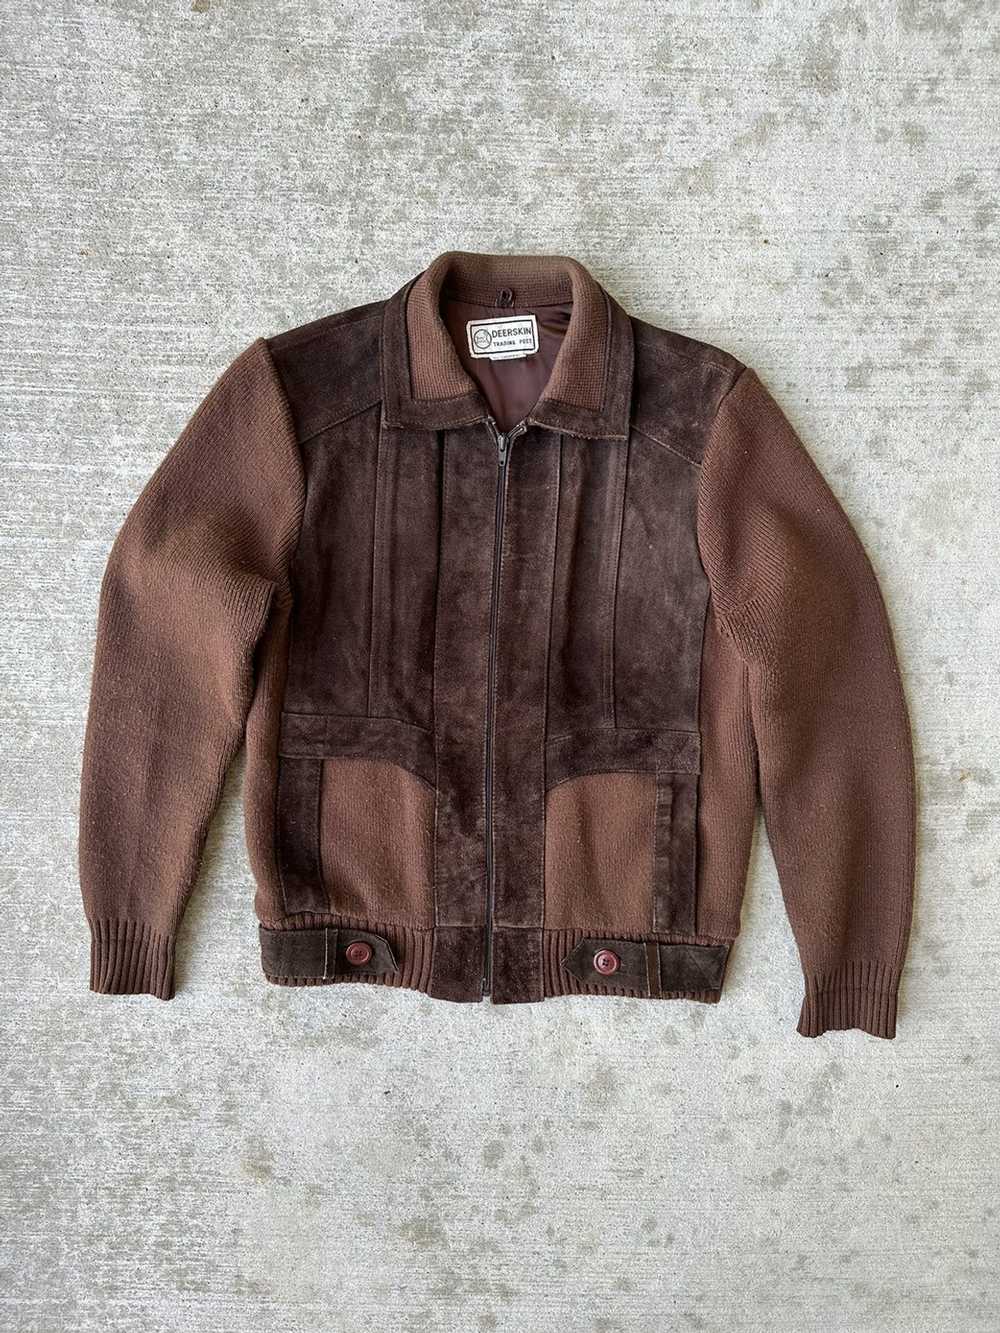 Genuine Leather × Retro Jacket × Vintage Vintage … - image 1